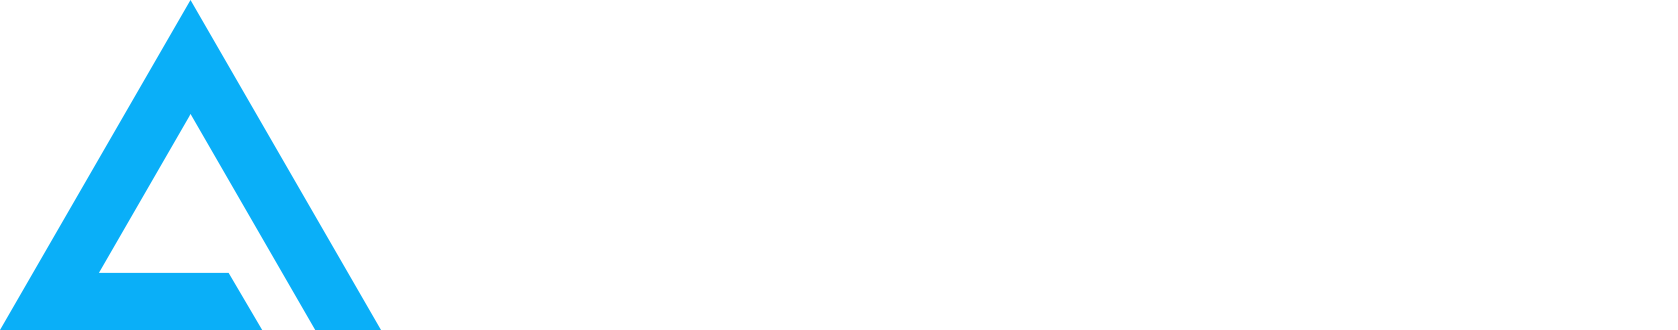 deltaprime logo